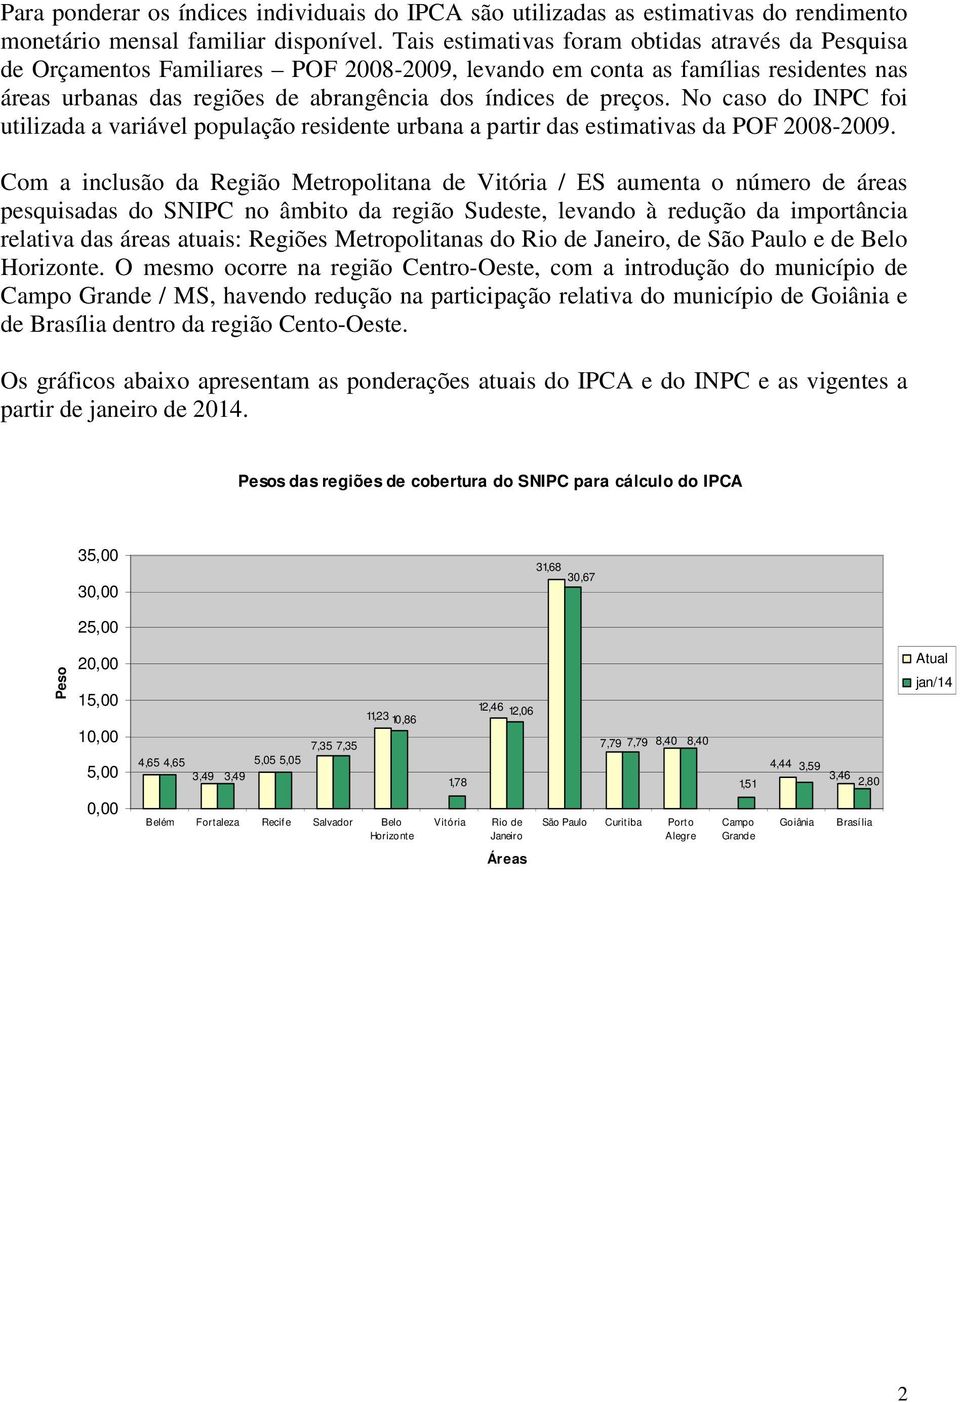 No caso do INPC foi utilizada a variável população residente urbana a partir das estimativas da POF 2008-2009.